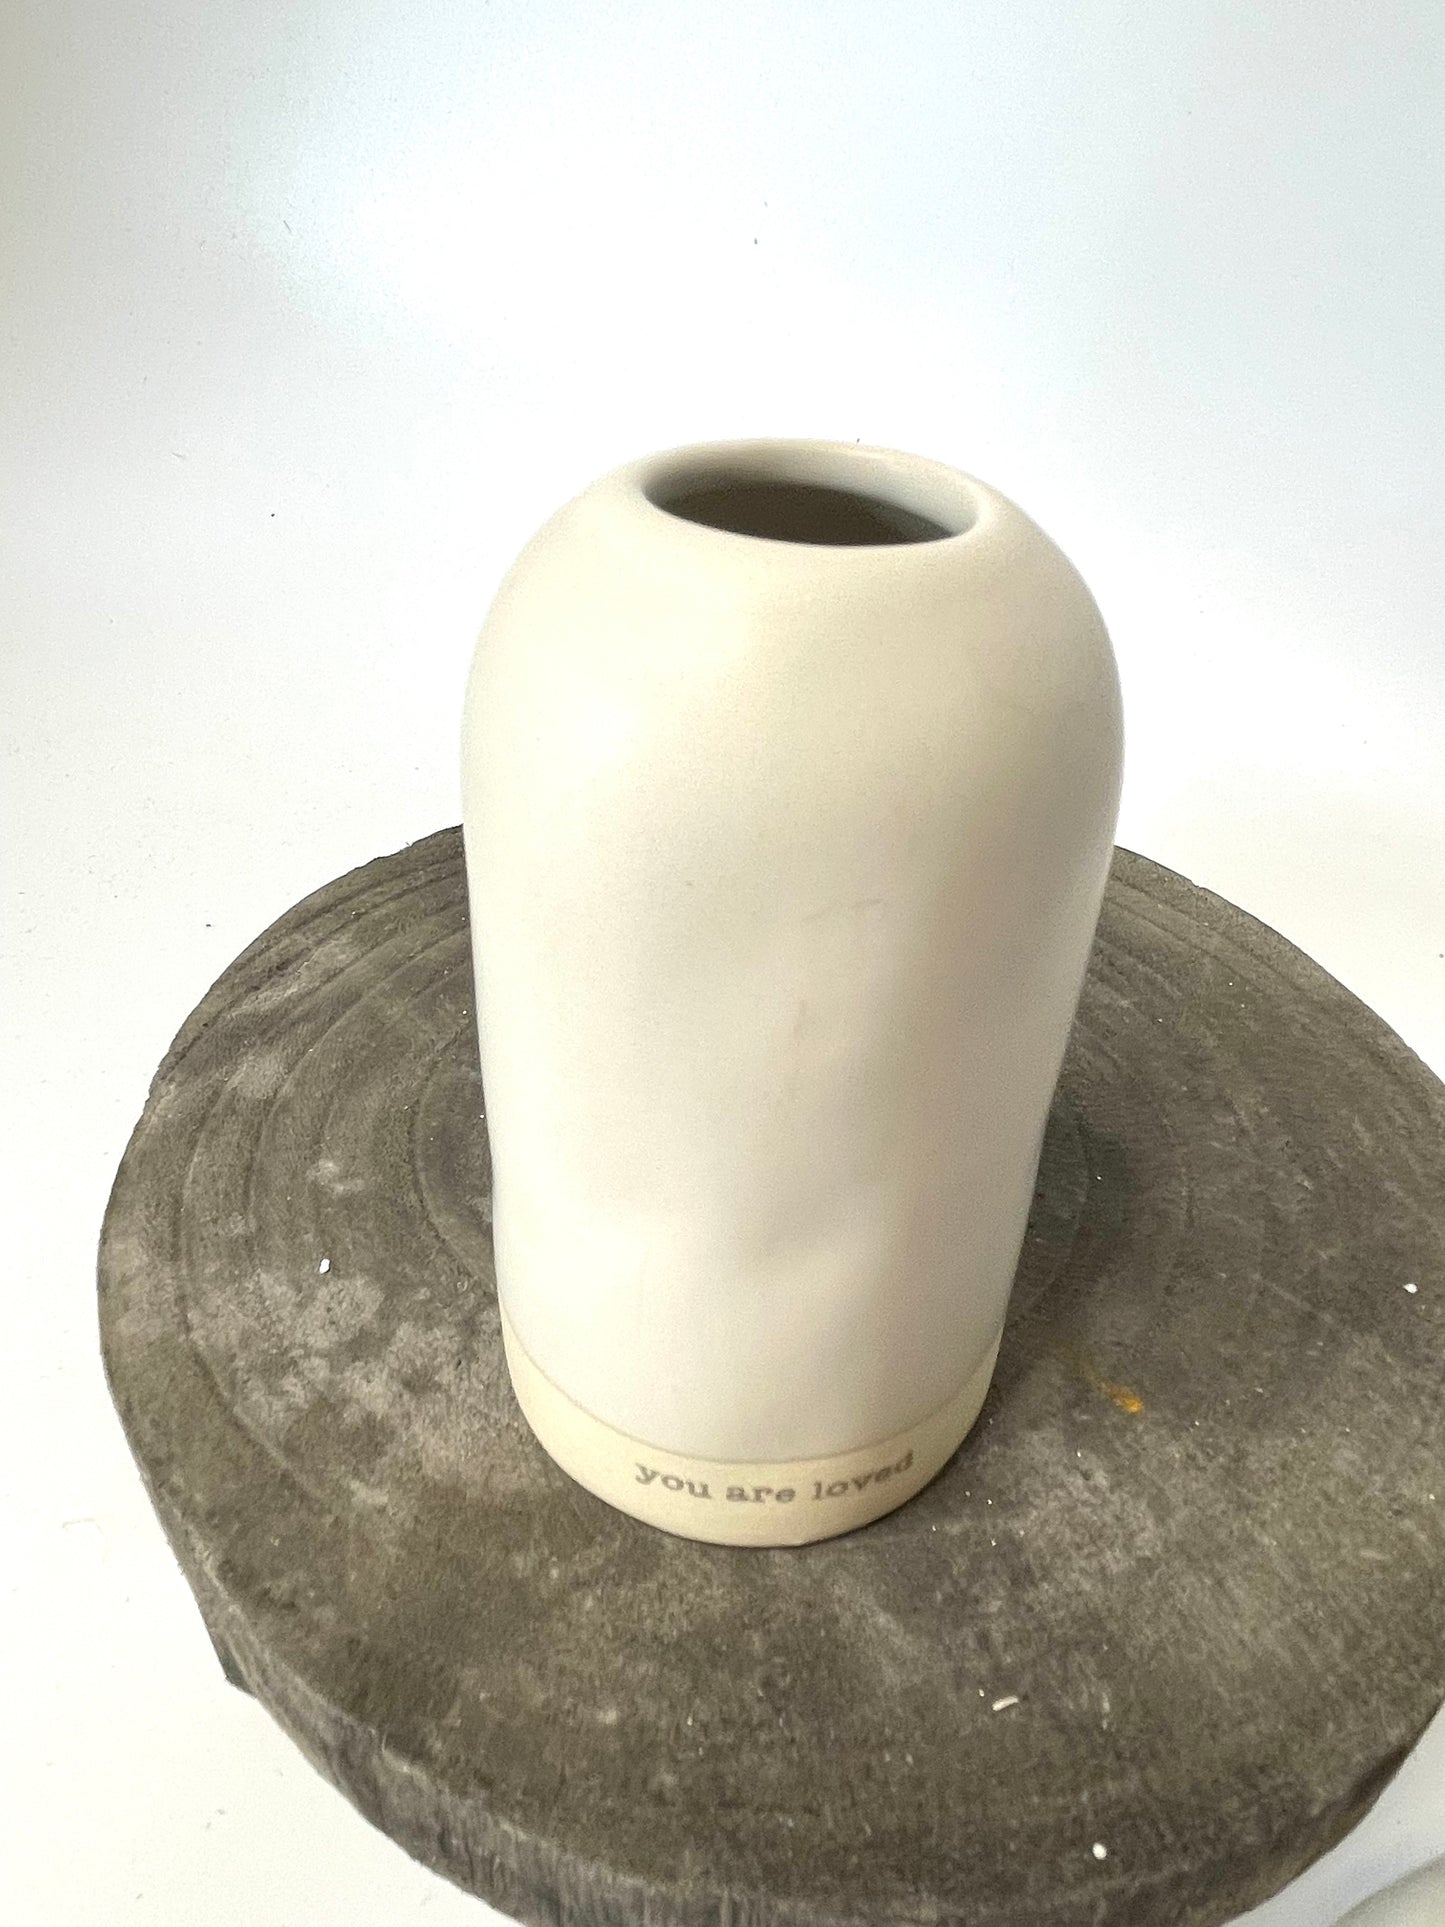 The Aroura Vase